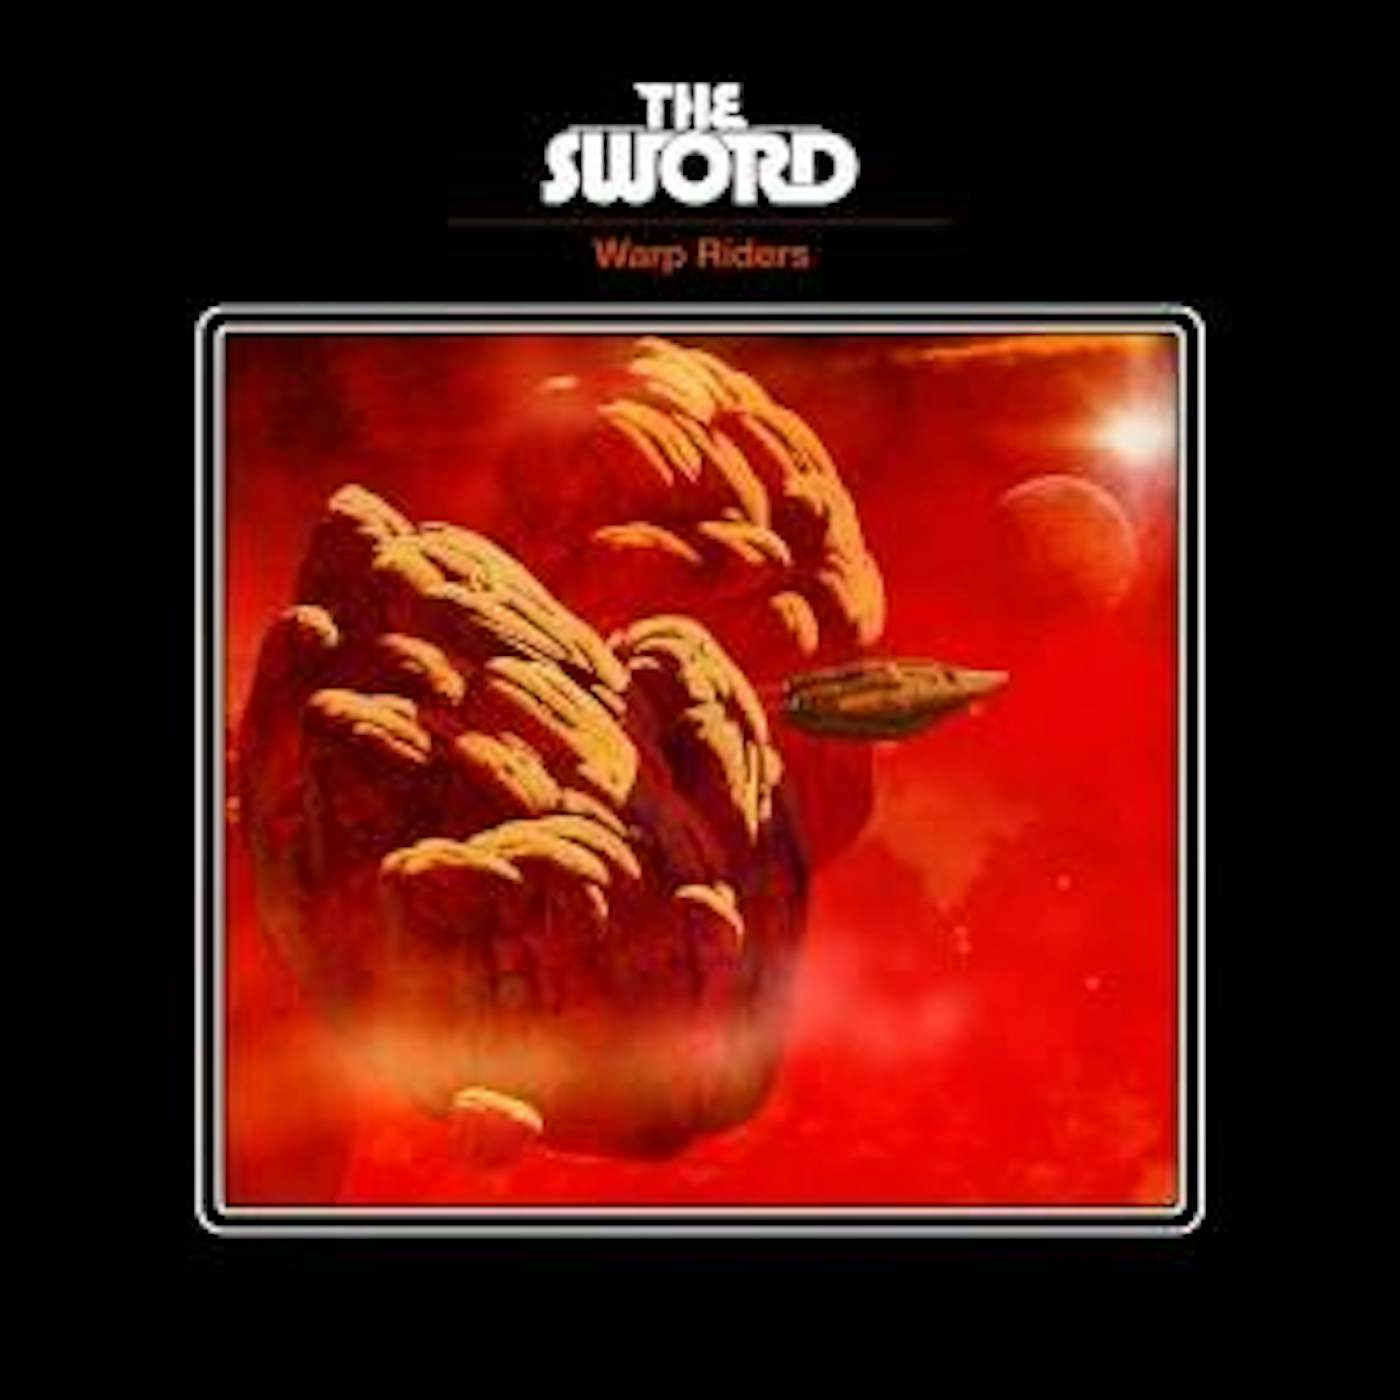 The Sword "Warp Riders" CD